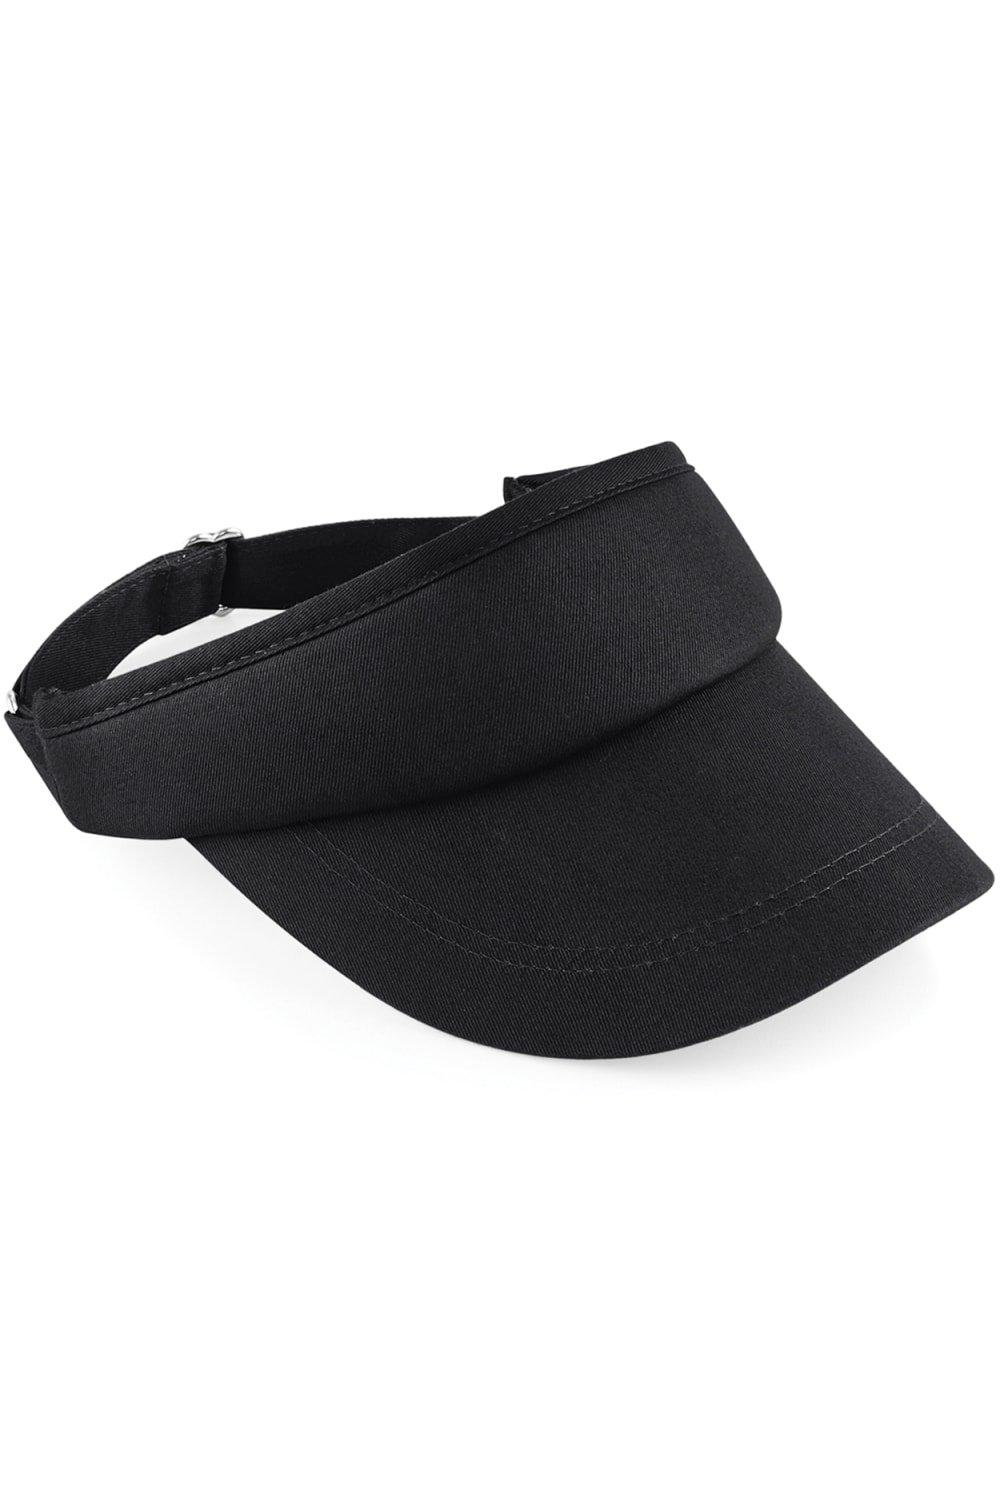 Beechfield Sports Visor / Headwear (Pack of 2)|black